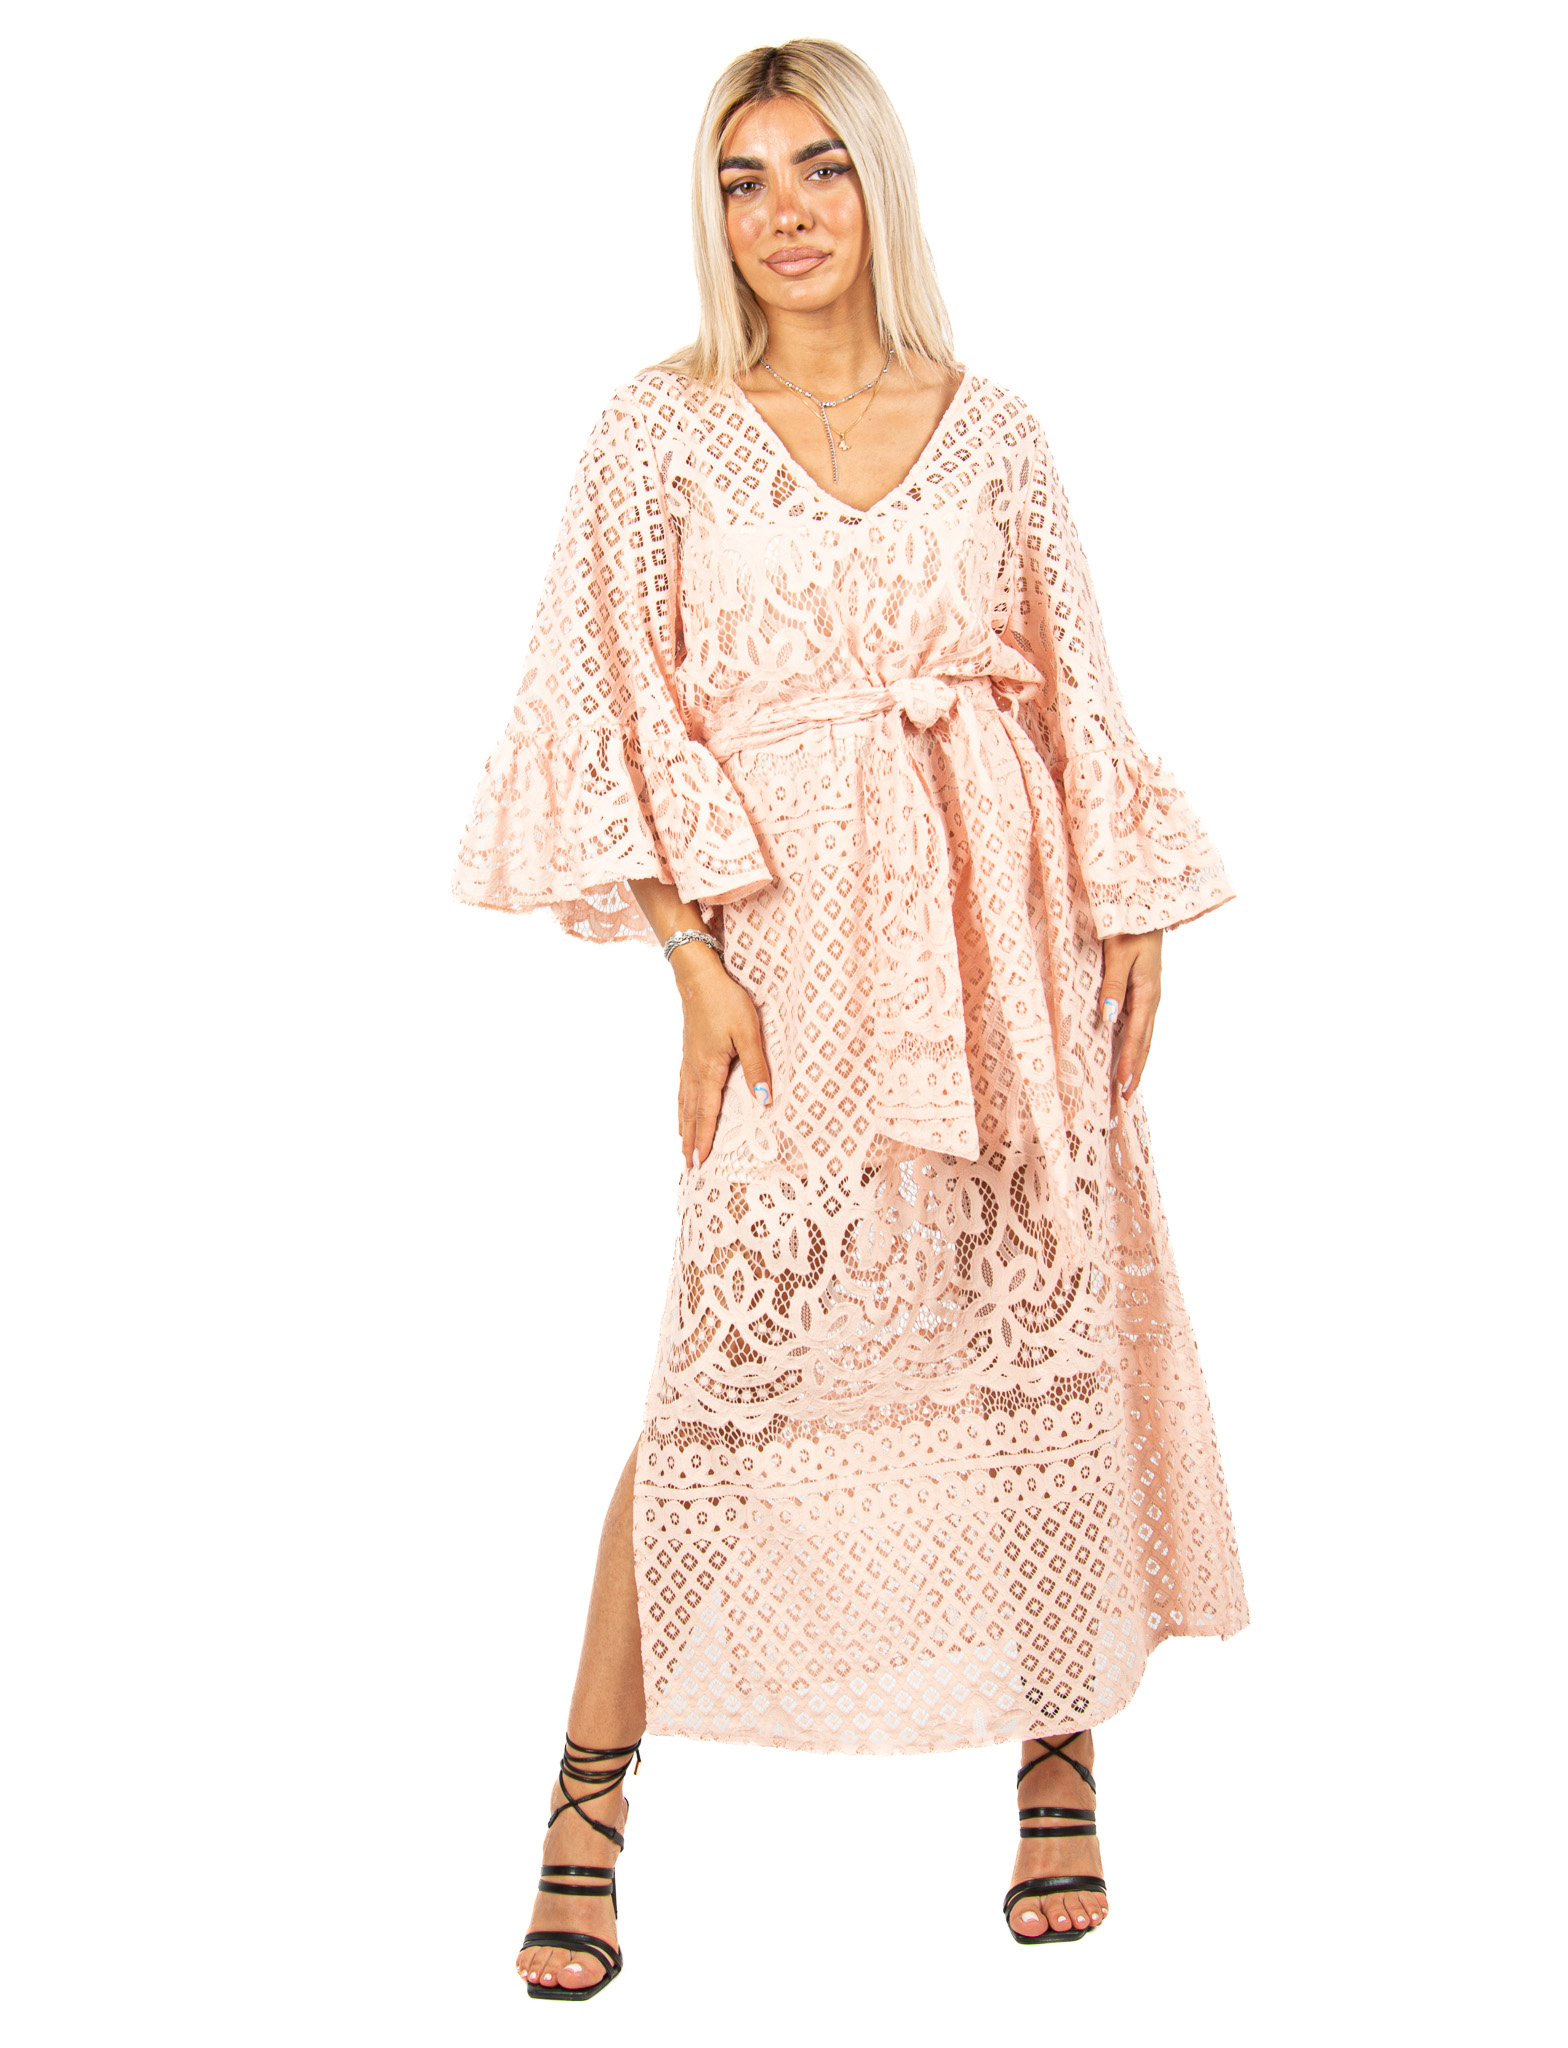 Φόρεμα Δαντέλα με Καμπάνα Μανίκια Ροζ | EllenBoutique